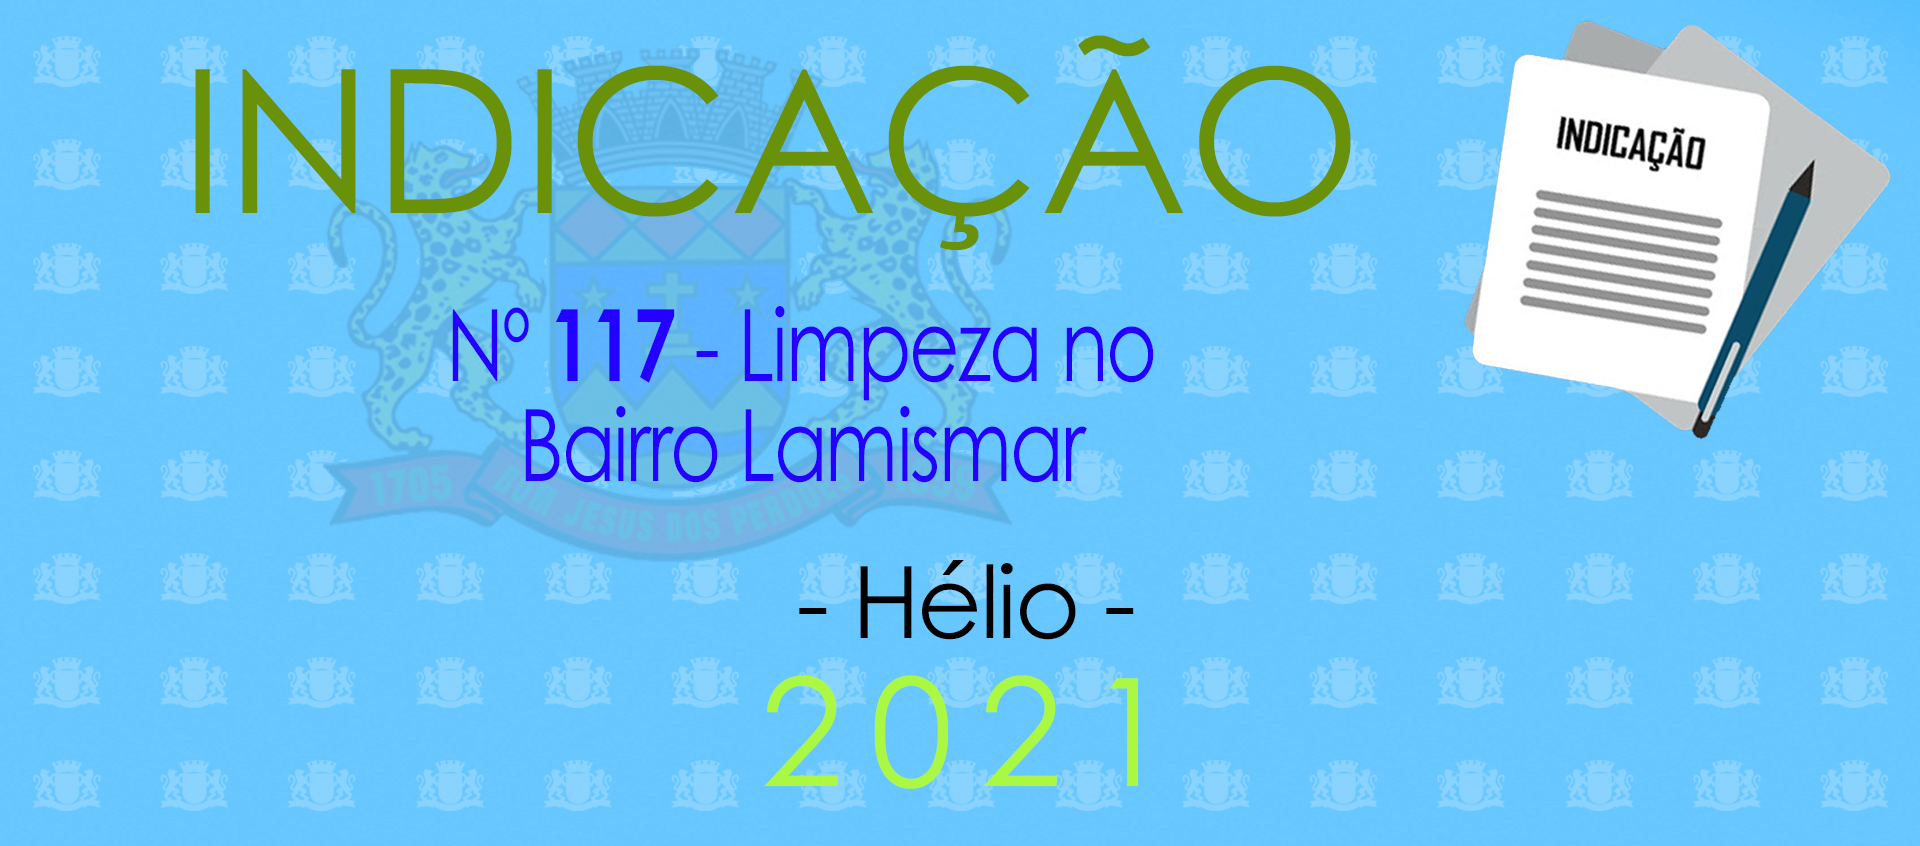 Indicação 117-2021 - Limpeza no Lamismar - Hélio